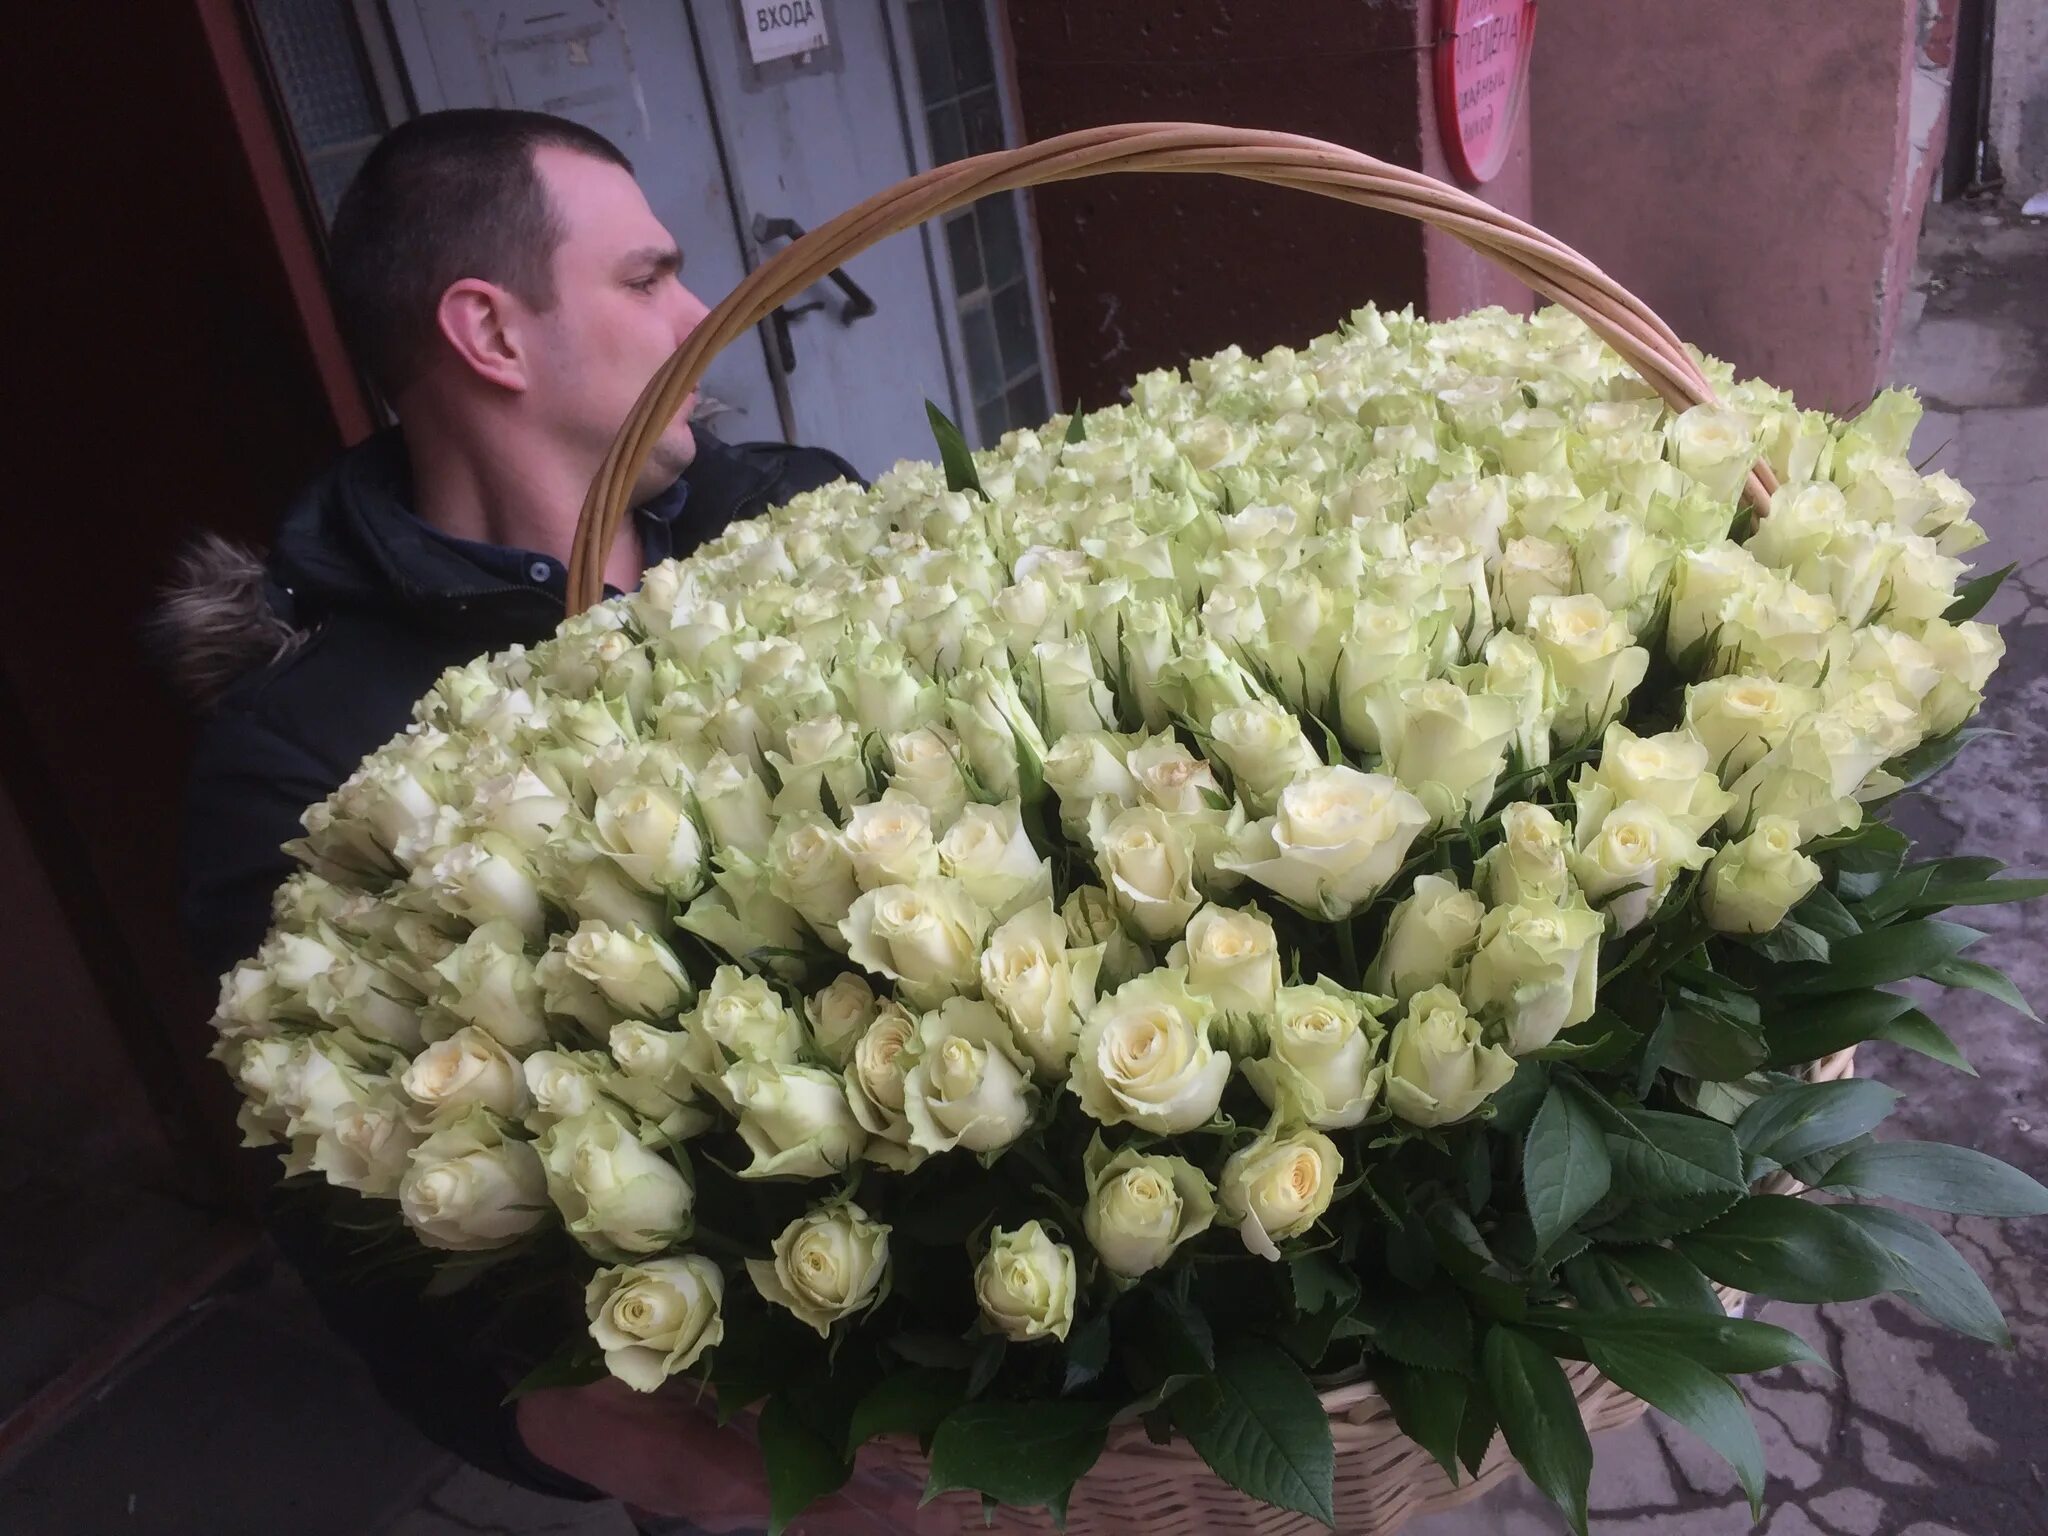 Огромный букет. Огромный букет белых роз. Шикарный букет белых роз. Мужчина с большим букетом цветов. Белые розы в руках